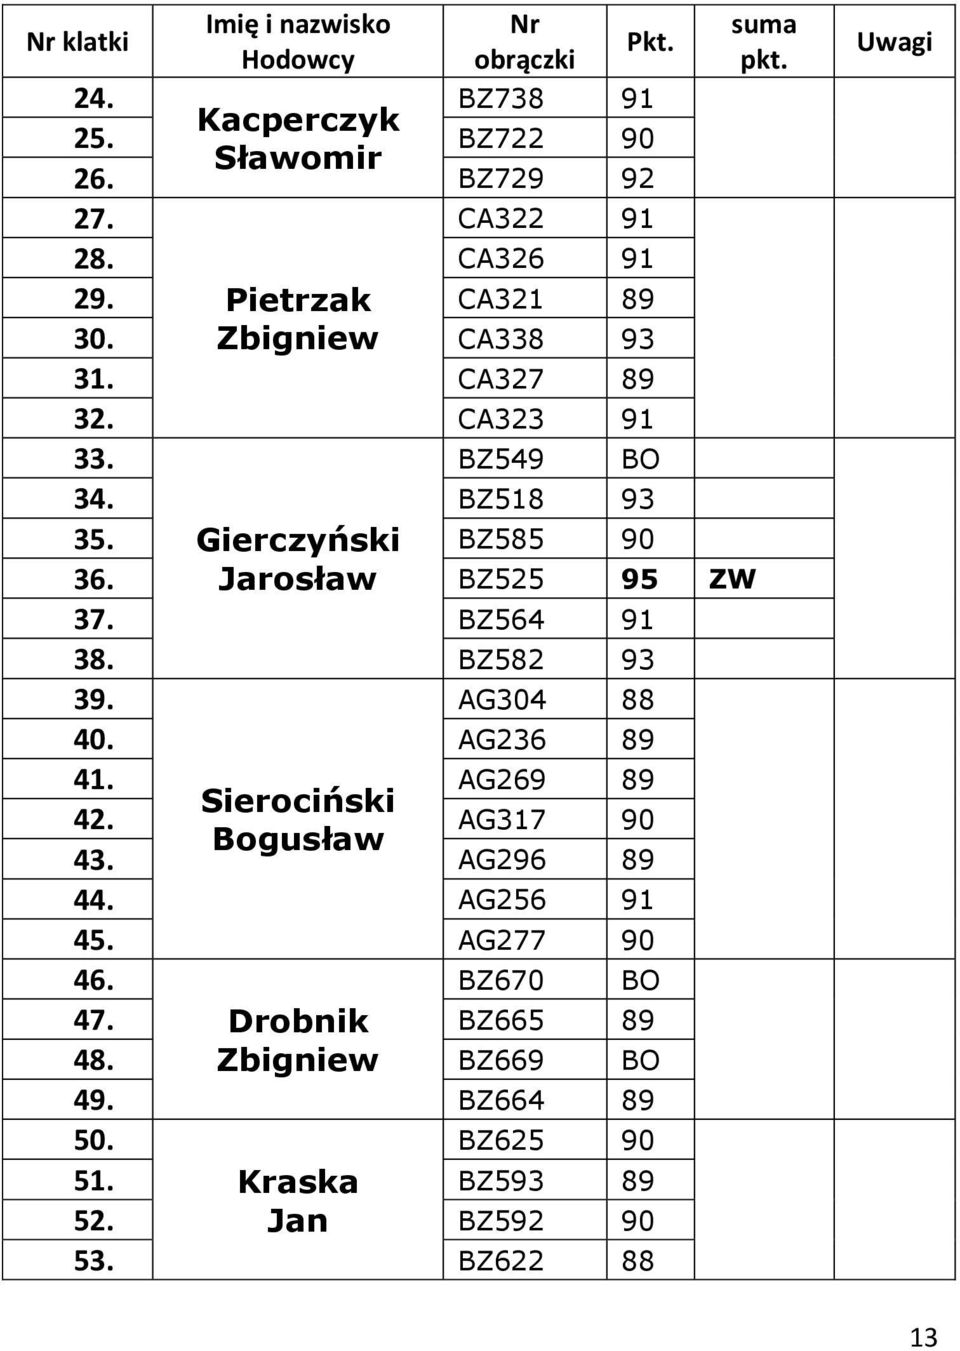 BZ525 95 ZW Gierczyński Jarosław 37. BZ564 91 38. BZ582 93 39. AG304 88 40. AG236 89 41. AG269 89 Sierociński 42.